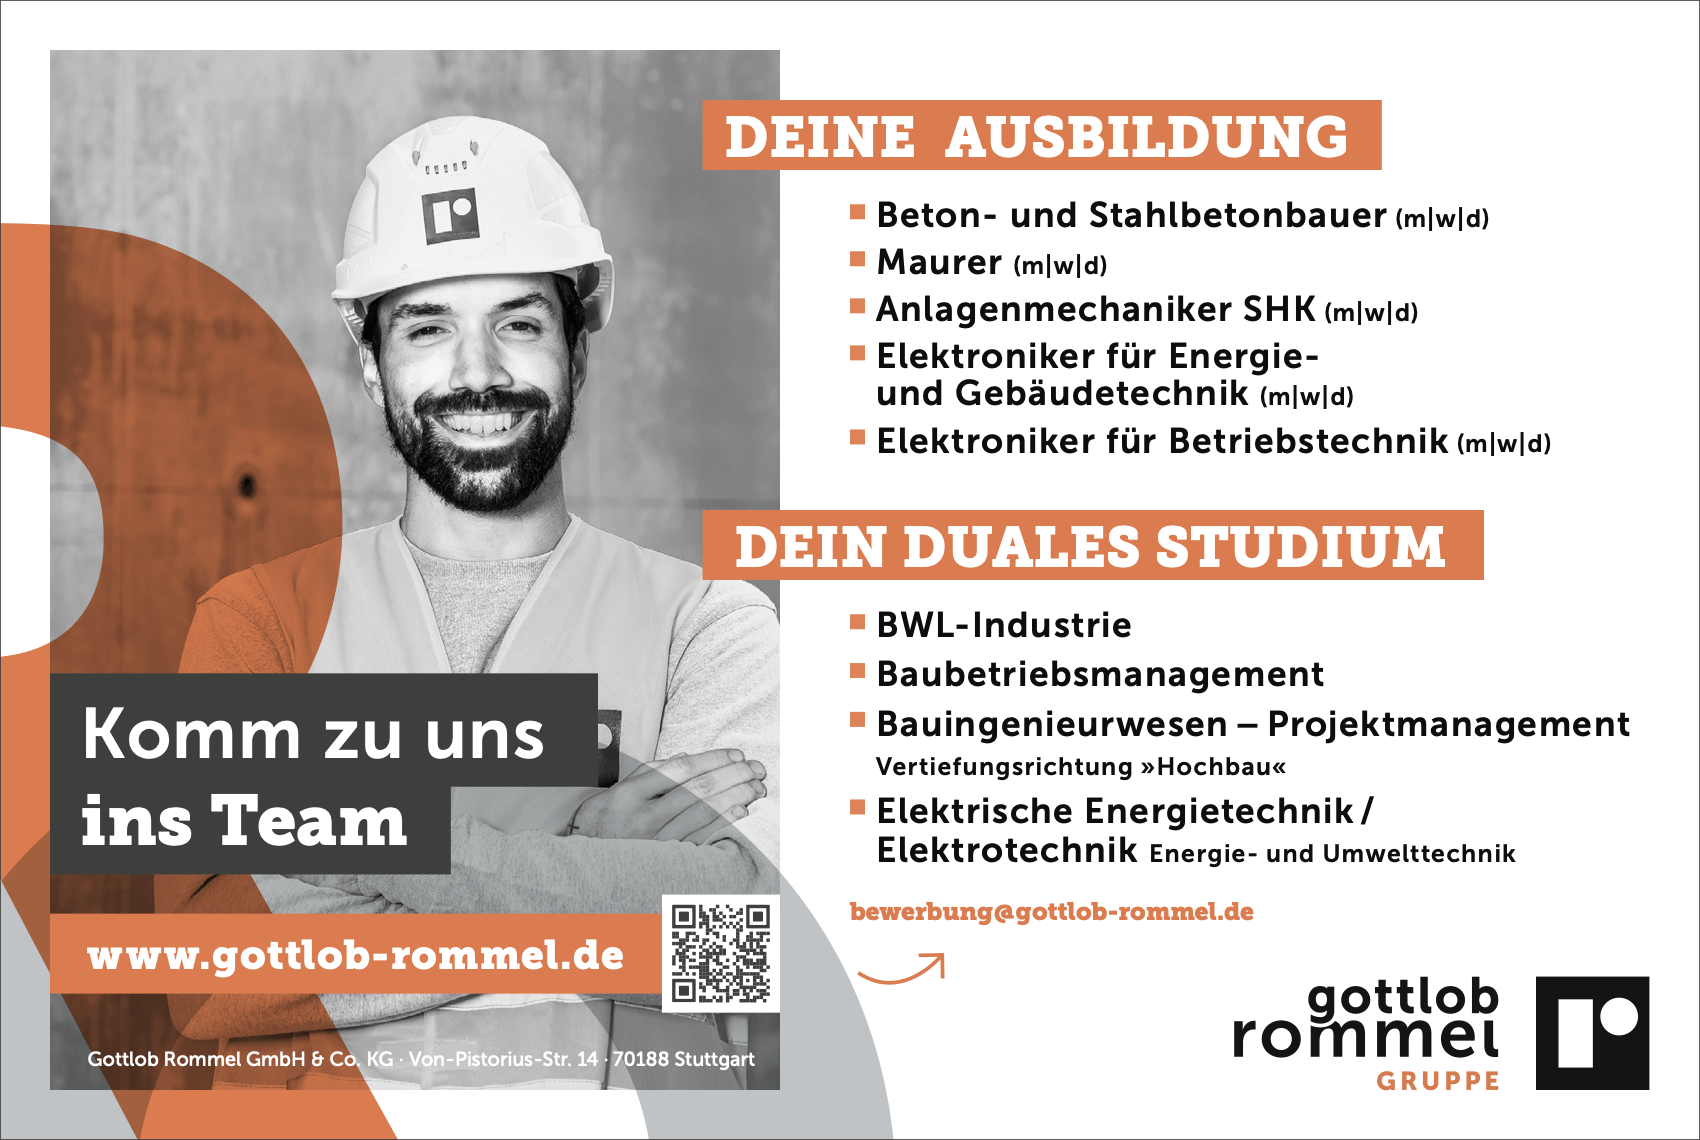 Beton- und Stahlbetonbauer/Mauer (m/w/d) | Gottlob Rommel Gruppe GmbH & Co. KG, Stuttgart